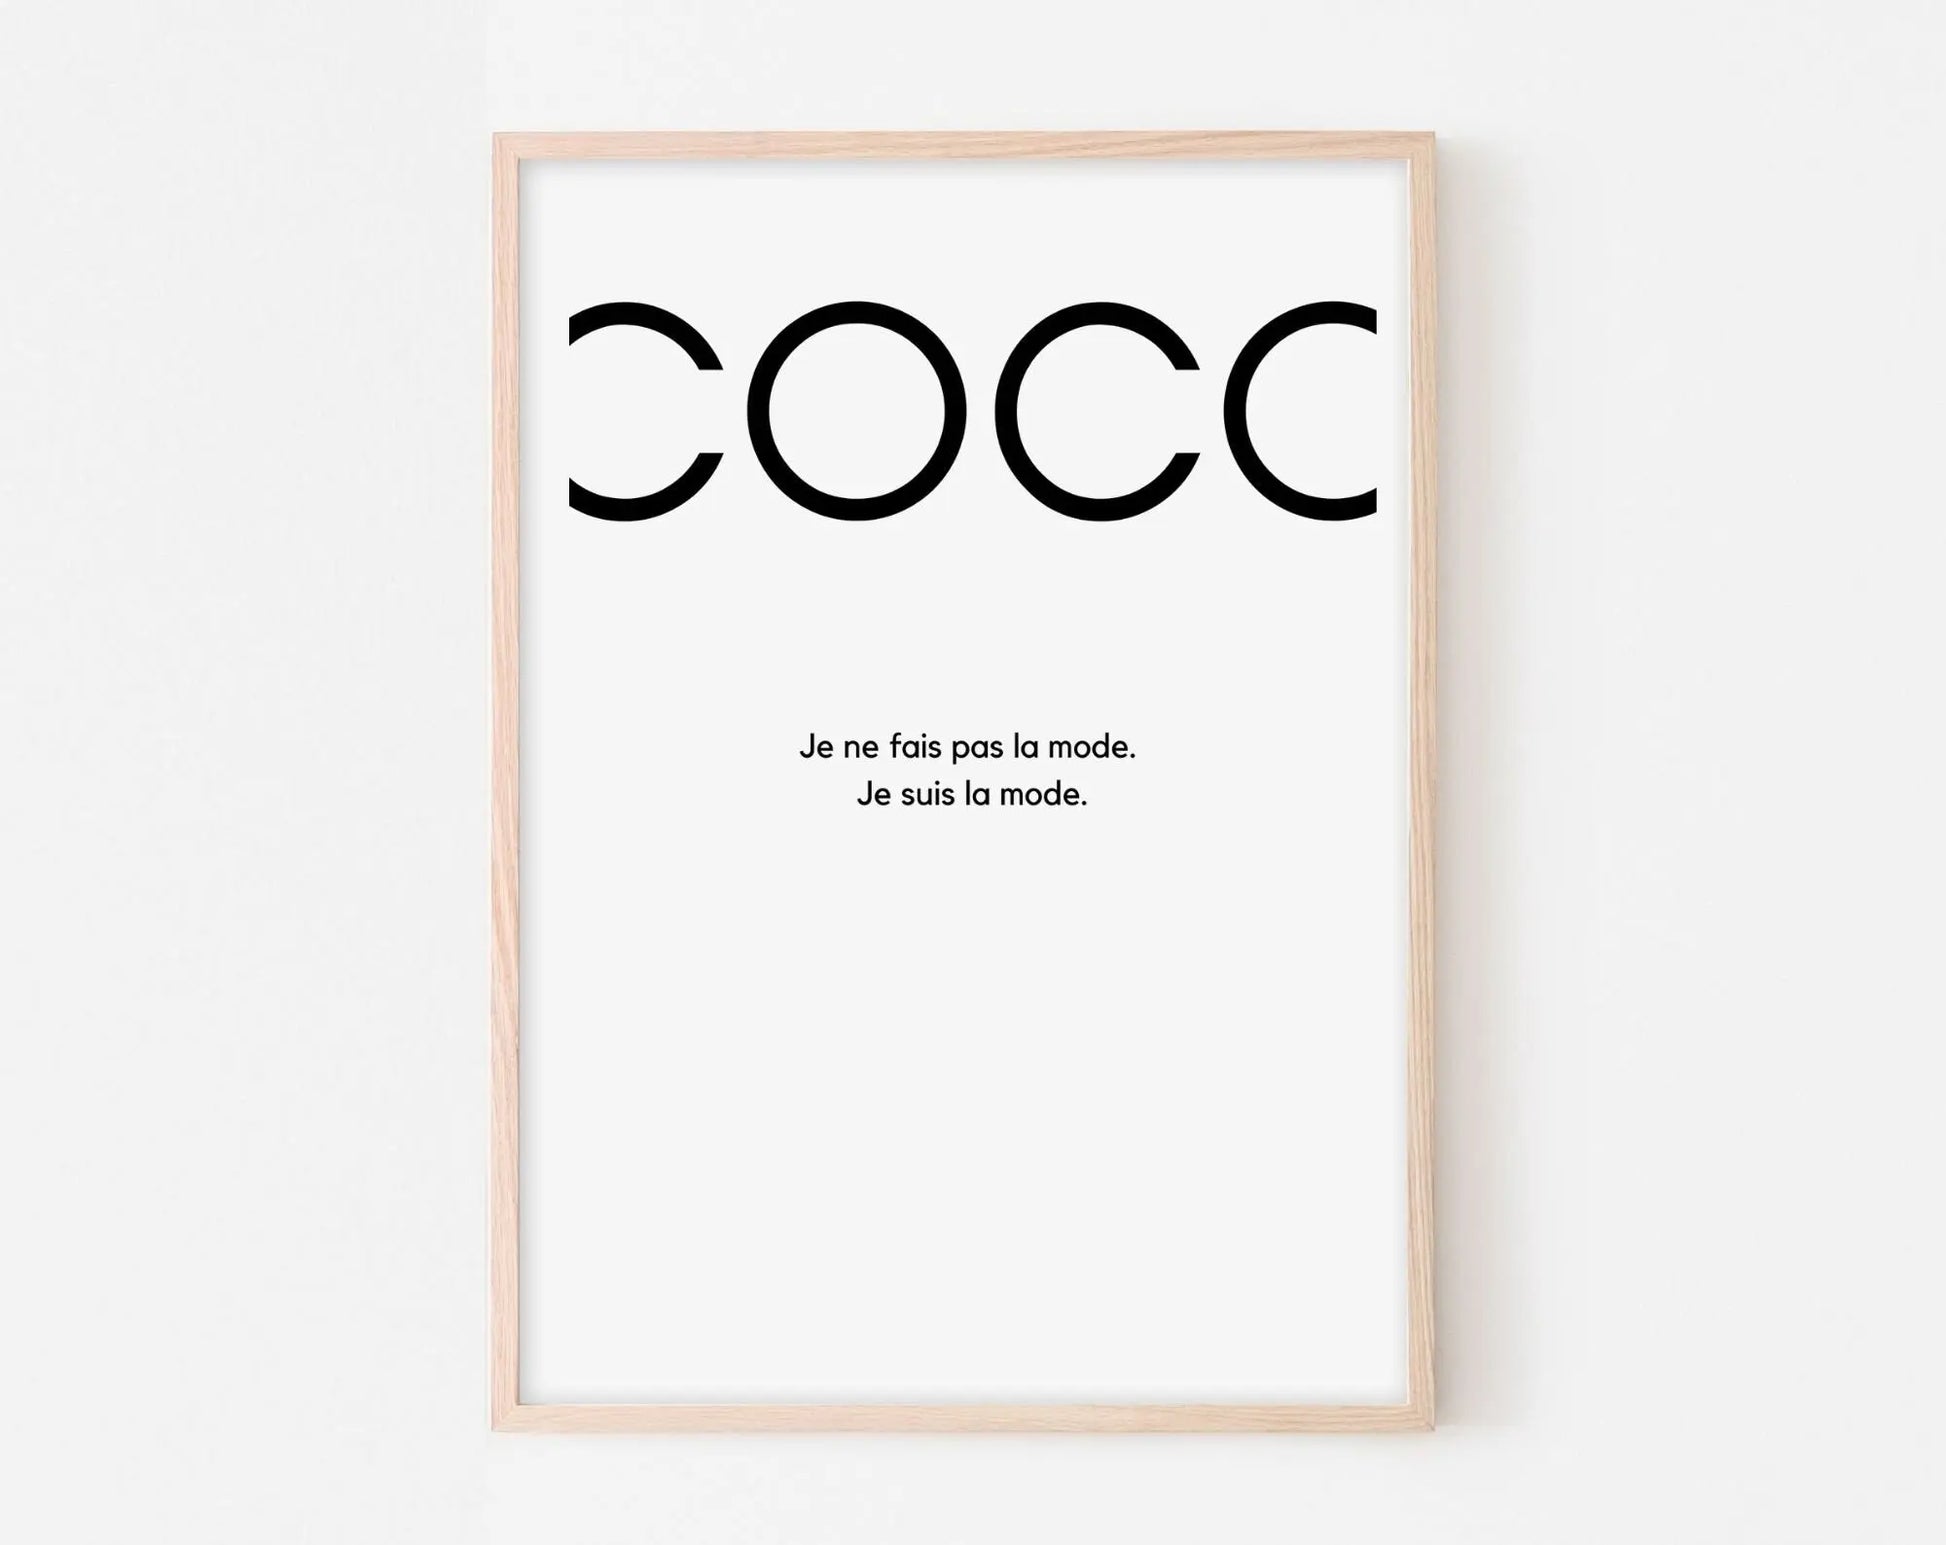 Affiche Coco - Affiche de la catégorie mode avec le texte "COCO" en noir sur fond blanc - Poster à imprimer FLTMfrance